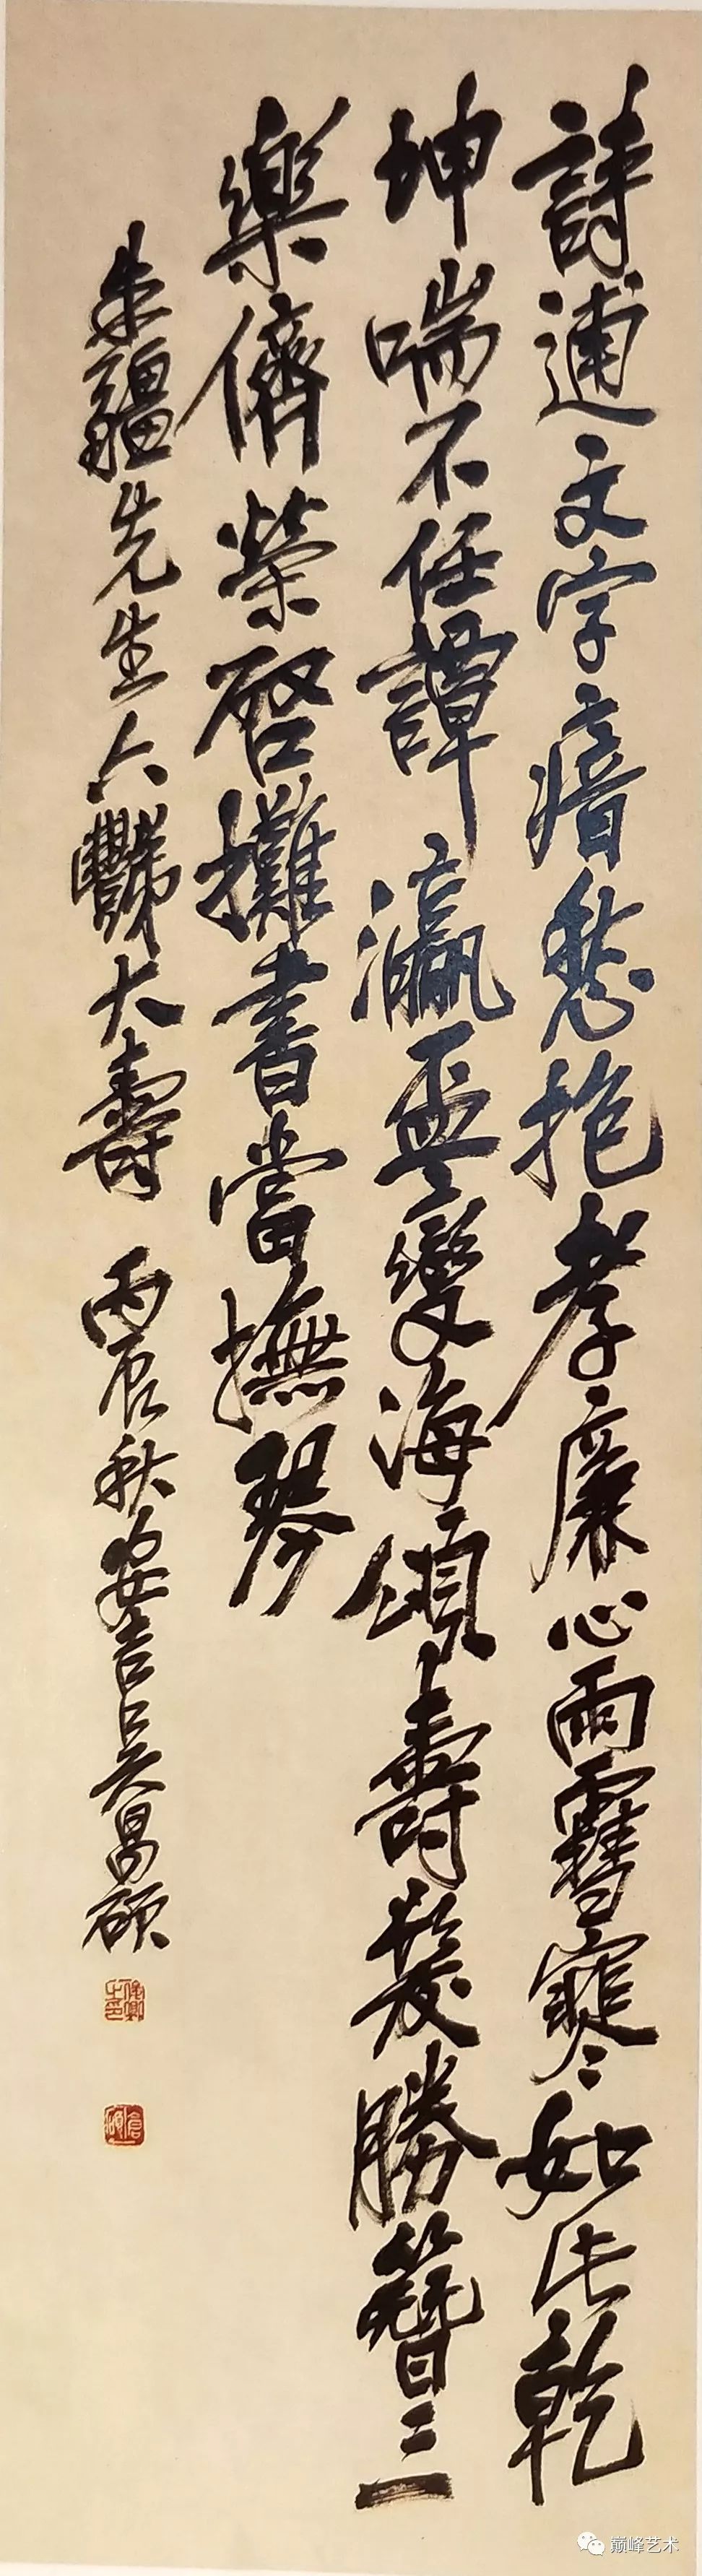 题为纯夫尊兄属,吴俊卿.吴昌硕(1844-1927 行书题画诗